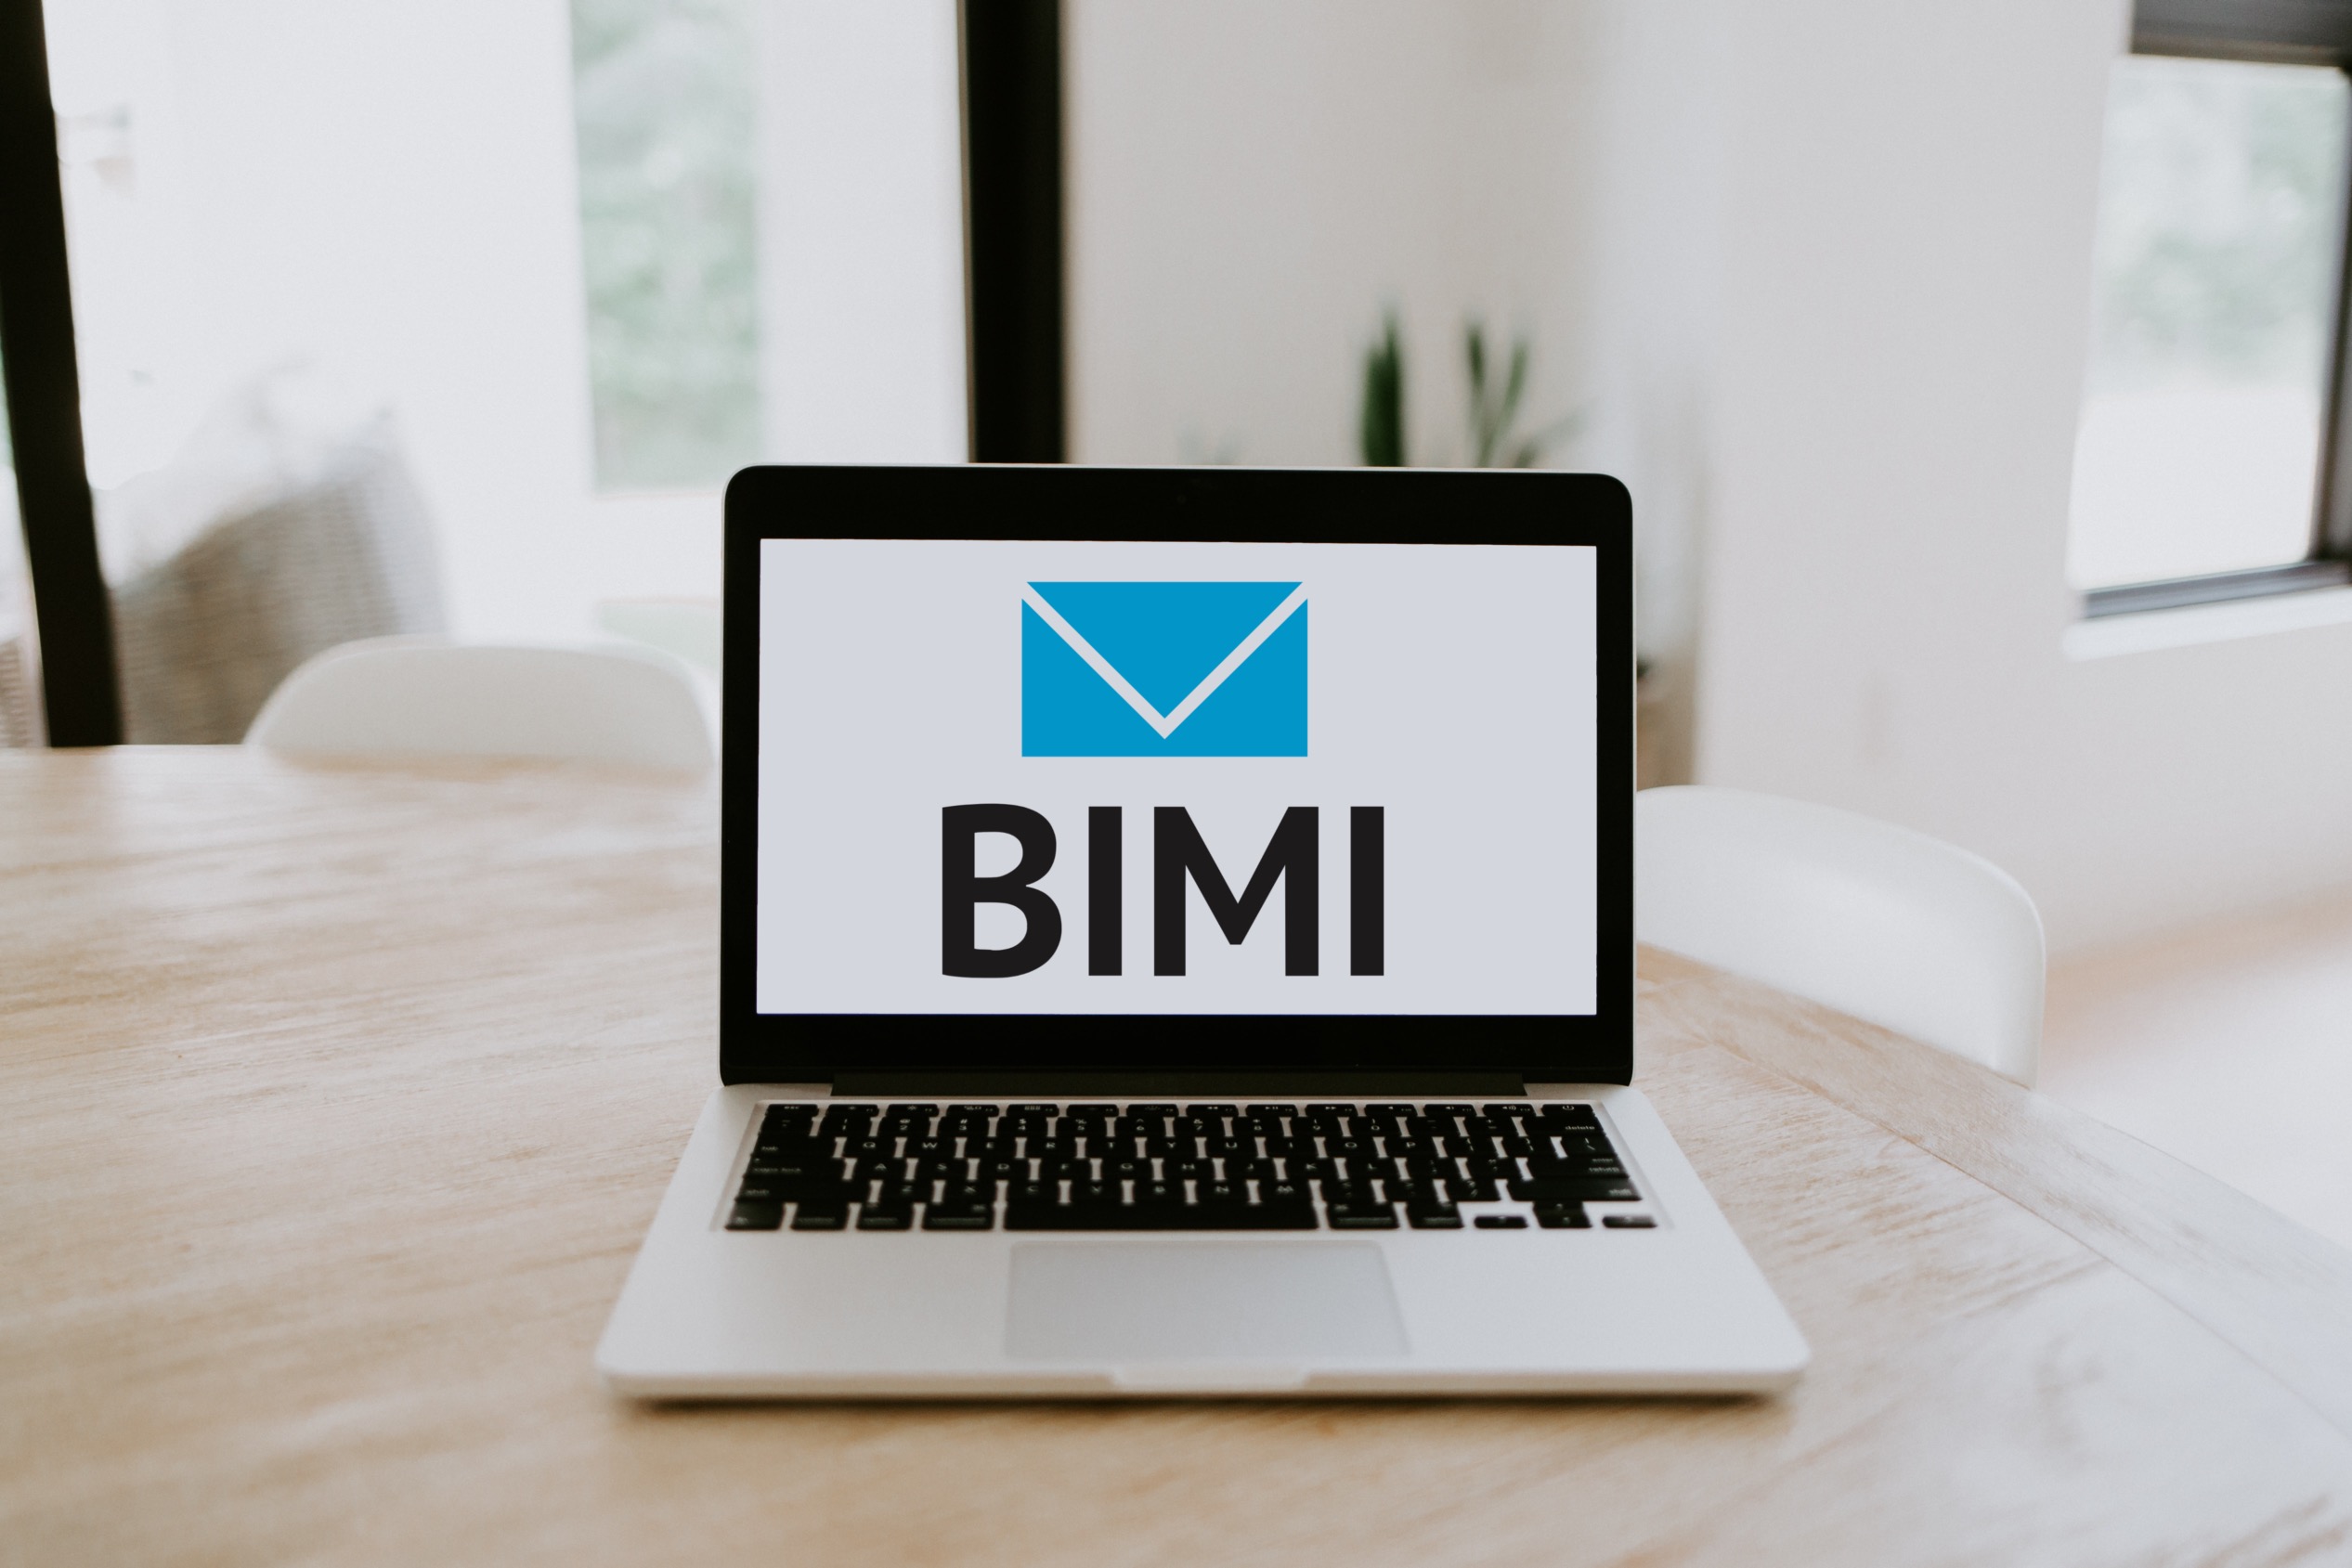 HOWTO: Create a BIMI logo file